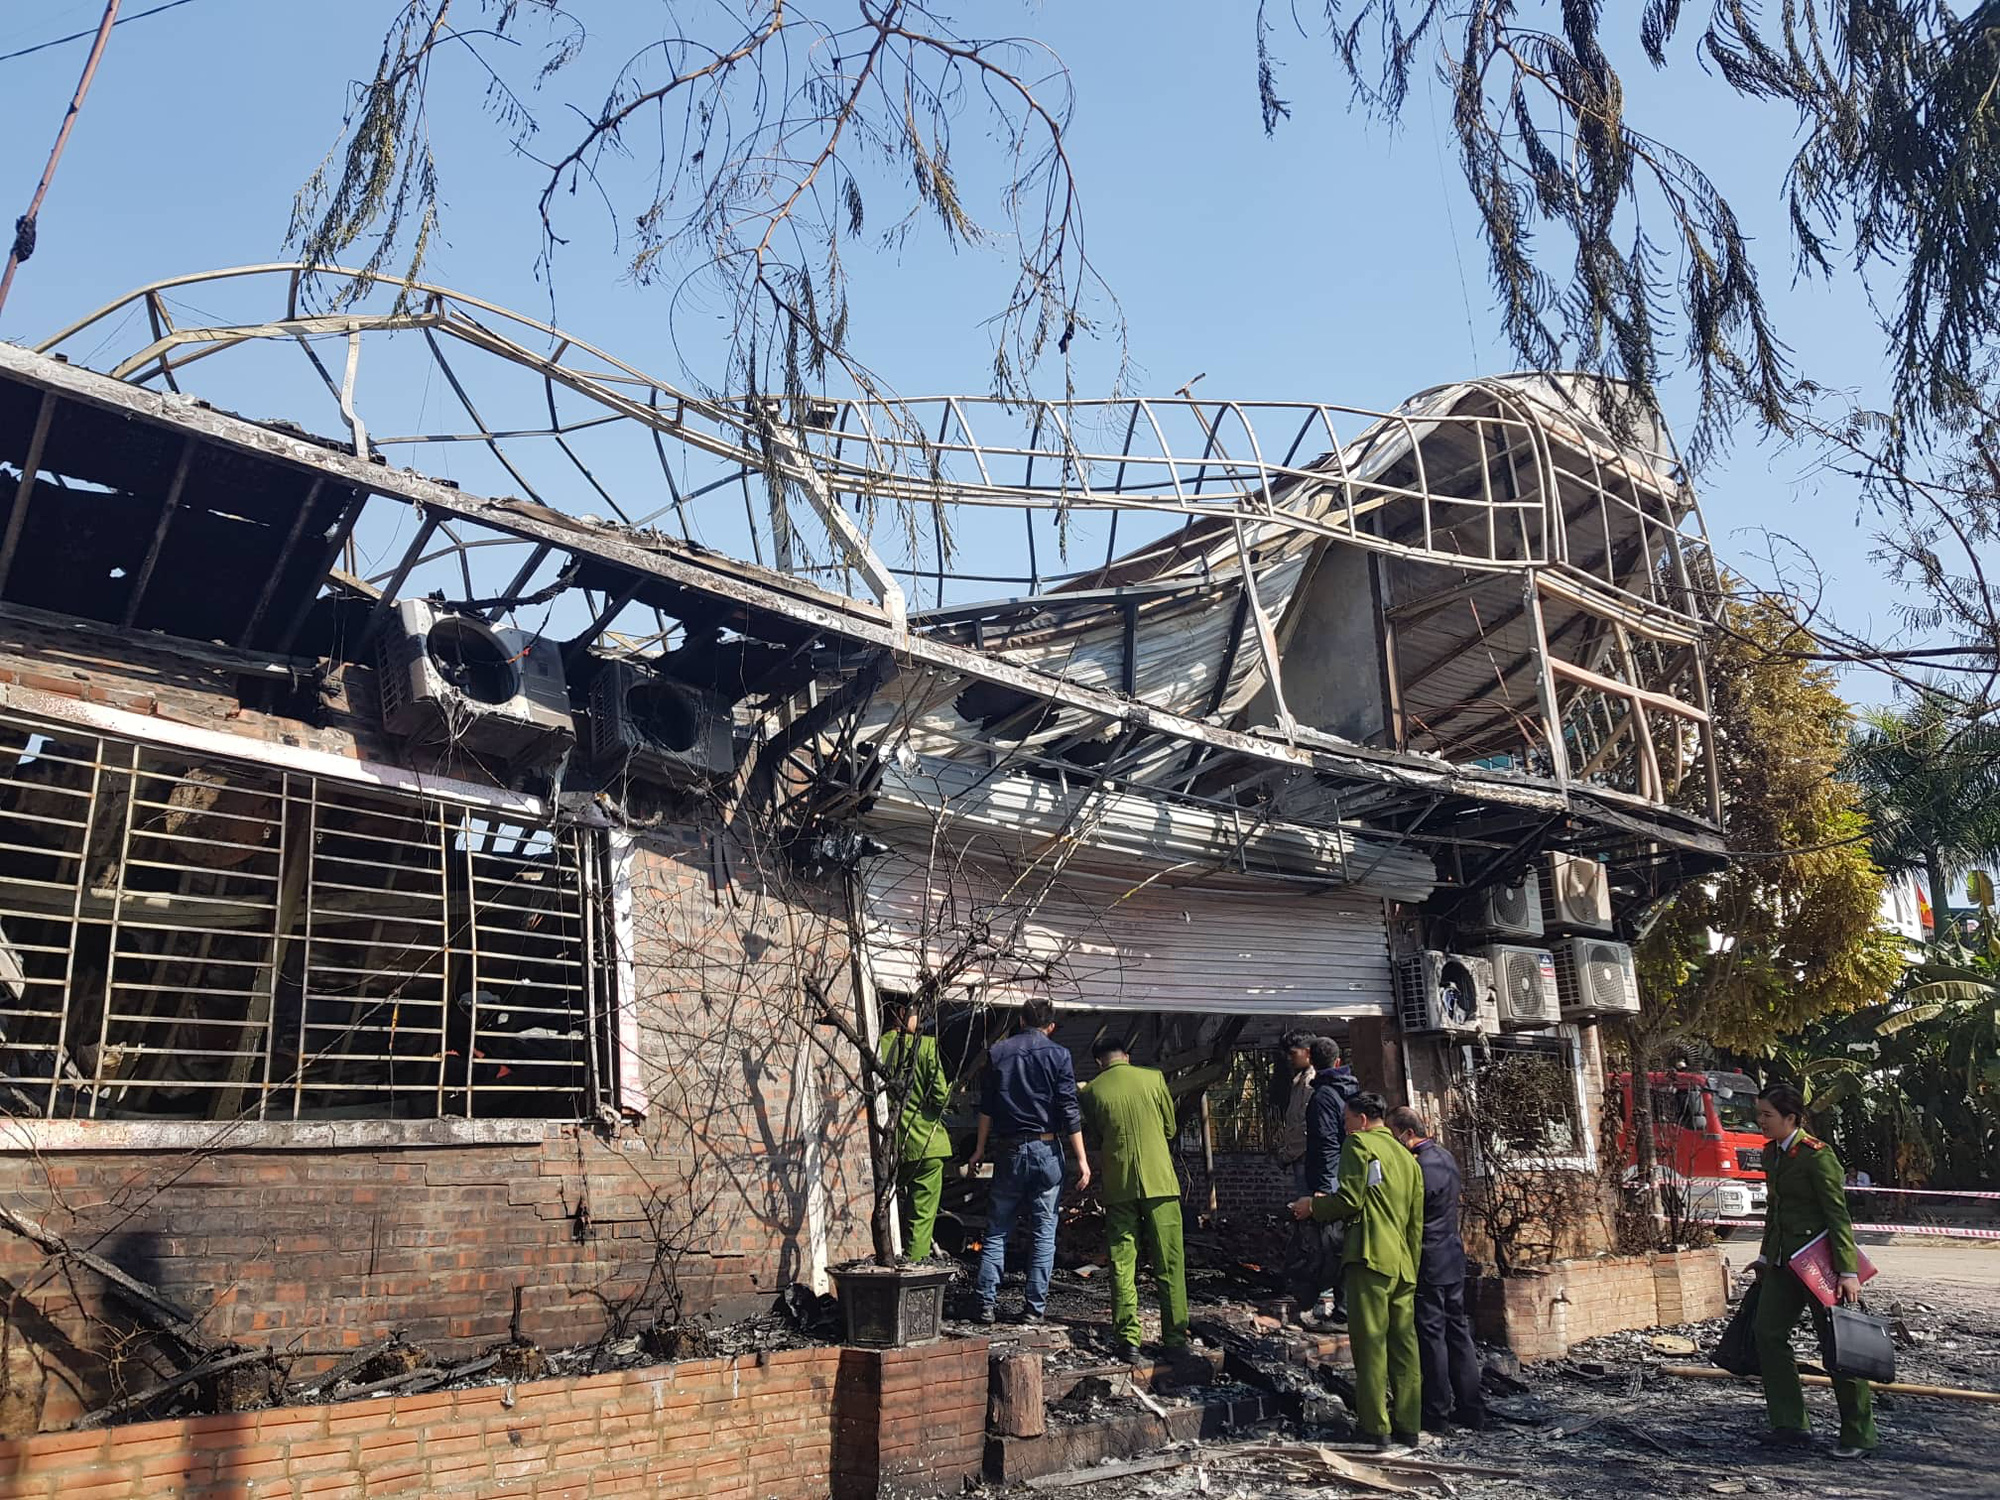 Kinh hoàng lời kể nhân chứng vụ cháy nhà hàng khiến 4 người tử vong tại Vĩnh Phúc - Ảnh 3.